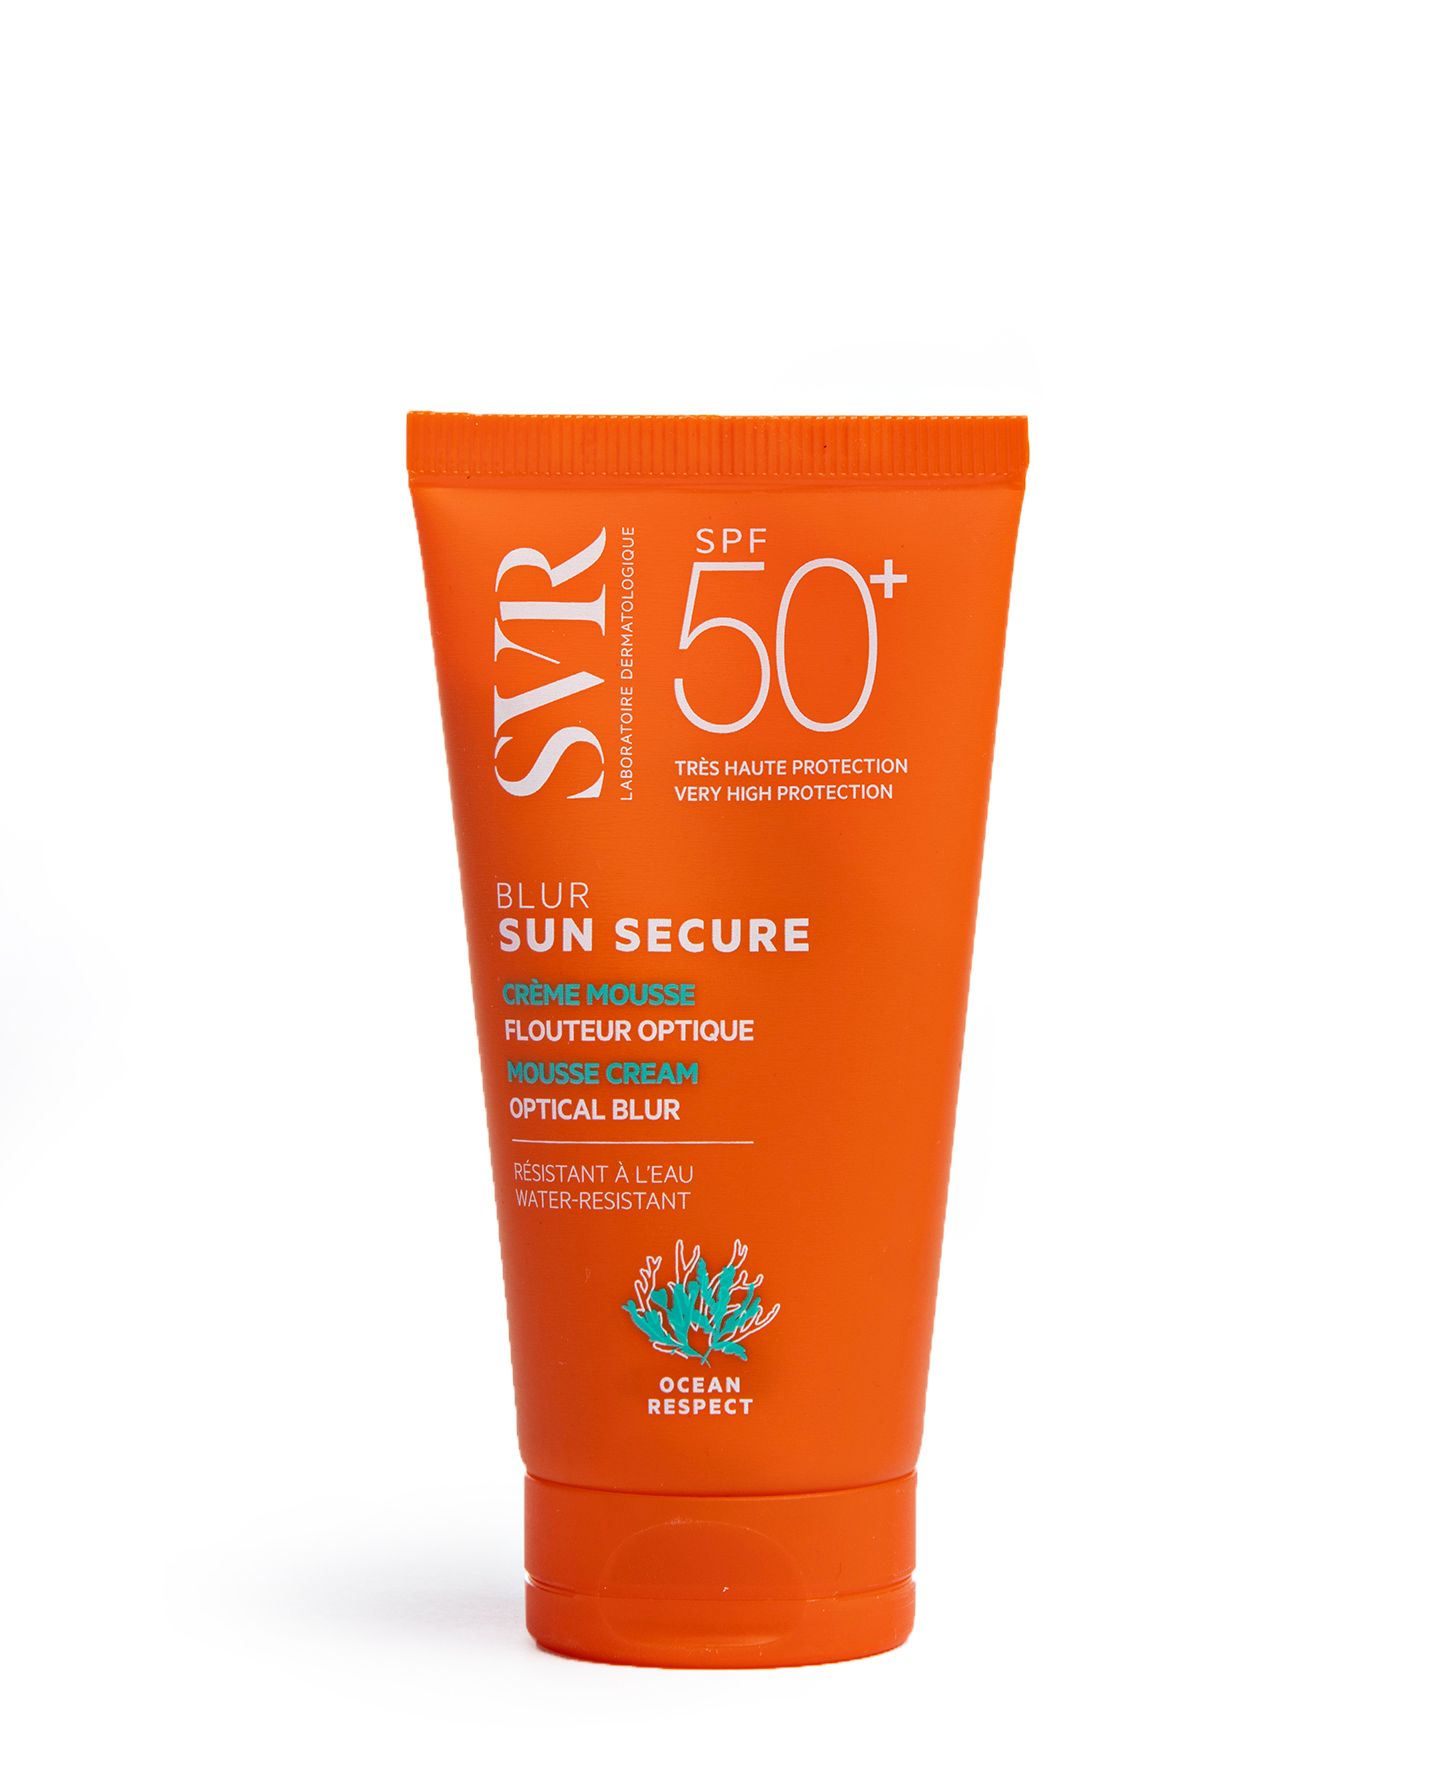 Uusi vedenpitävä SVR Sun Secure 50+ -aurinkosuojatuote sopii herkällekin iholle. 50 ml n. 22 €. © Tommi Tuomi